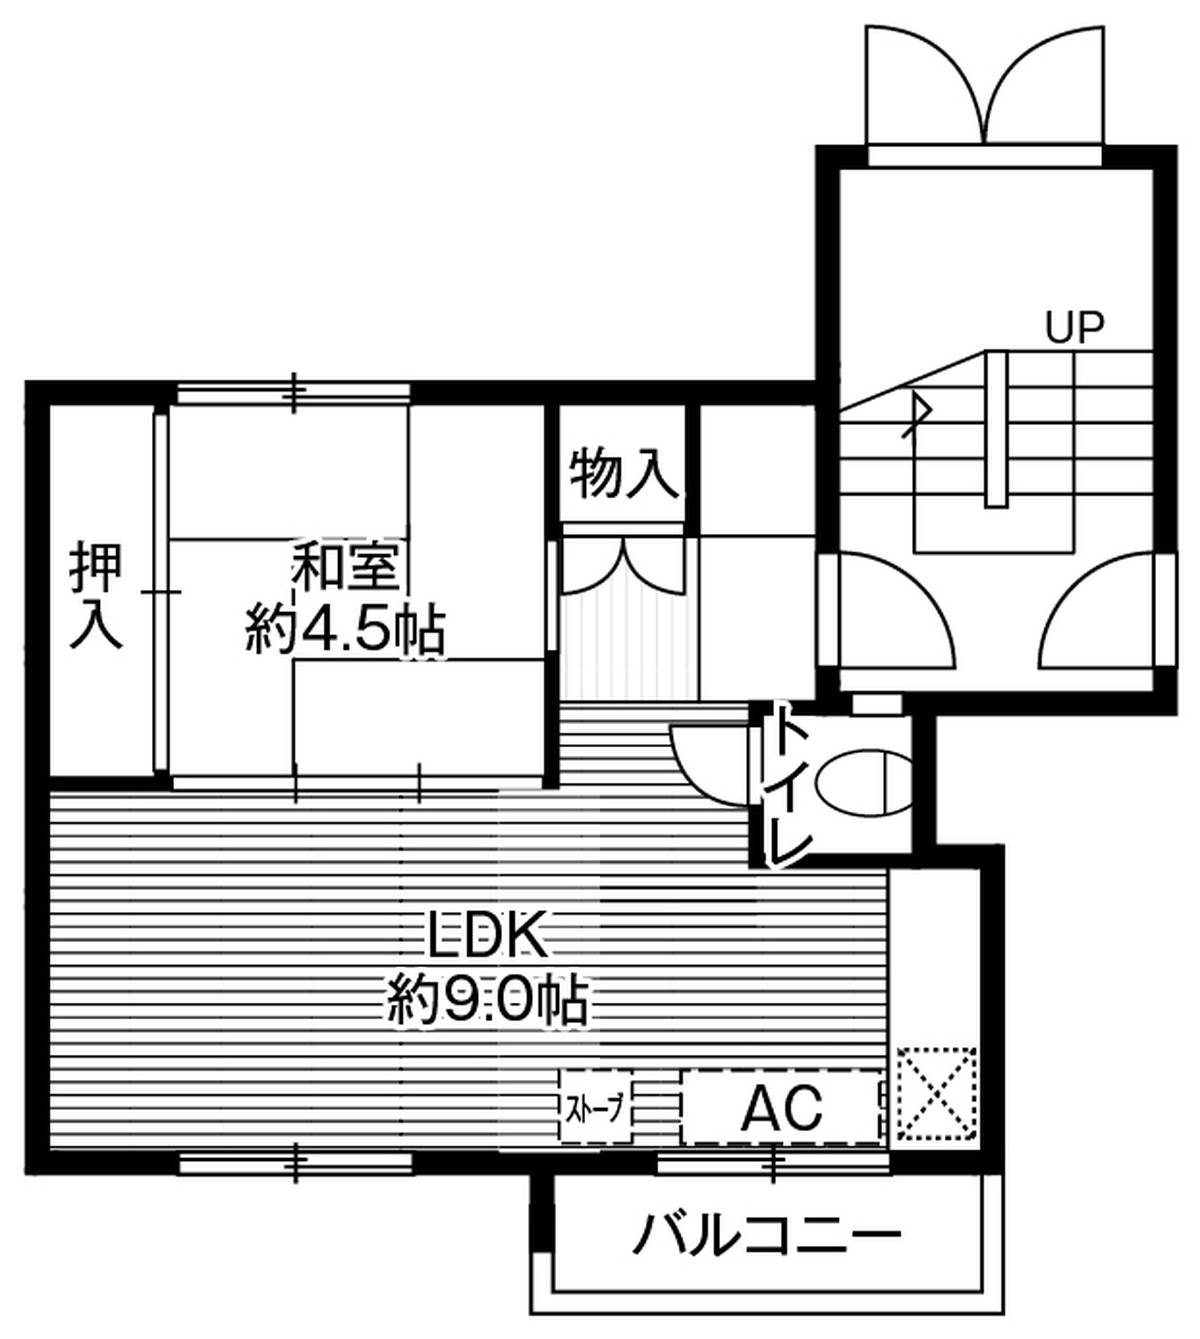 Sơ đồ phòng 2K của Village House Fukuzumi ở Toyohira-ku